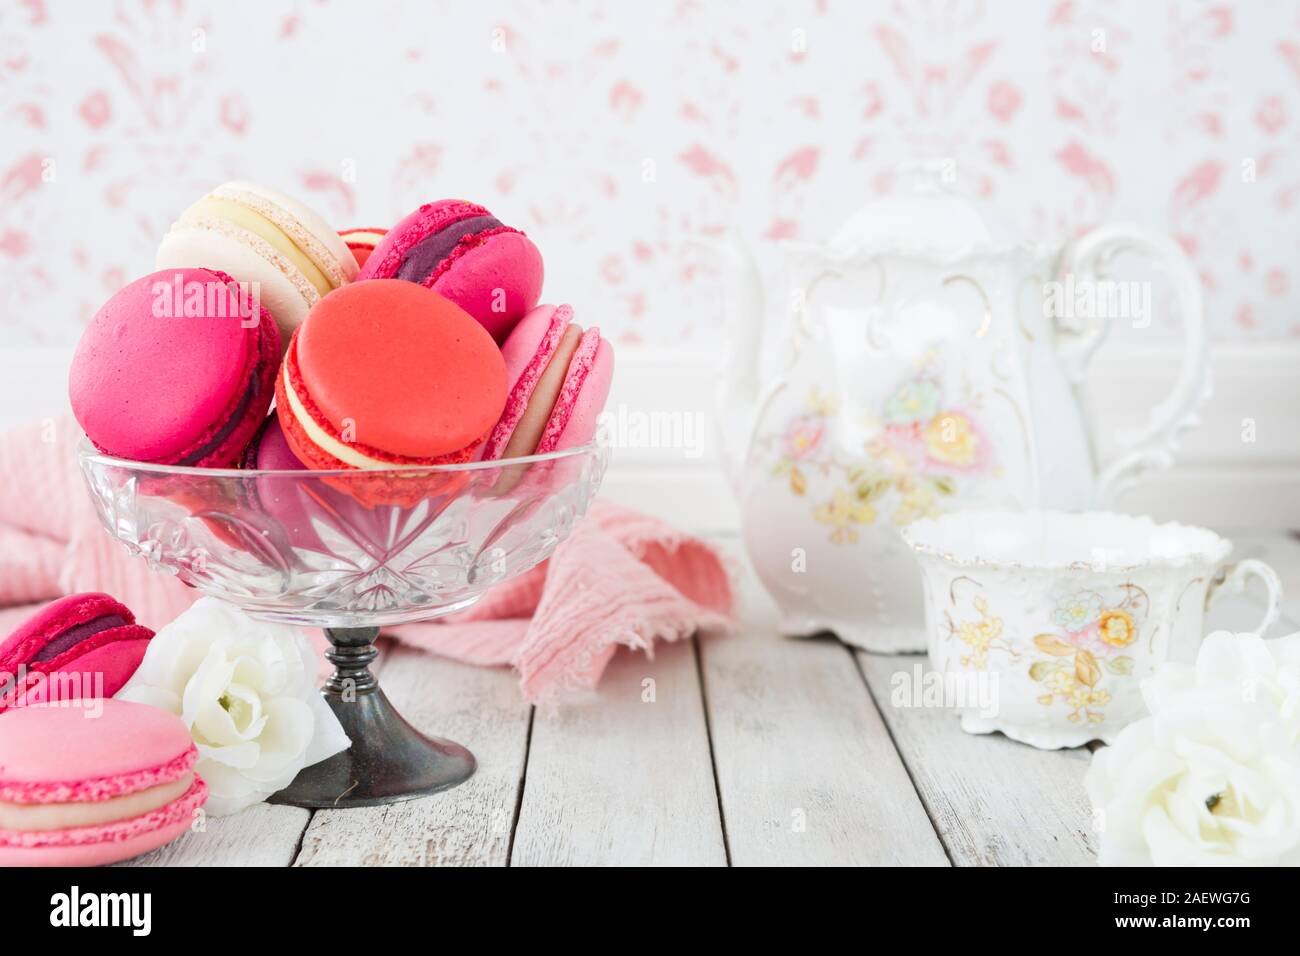 Una colección de pink macarons. Foto de stock